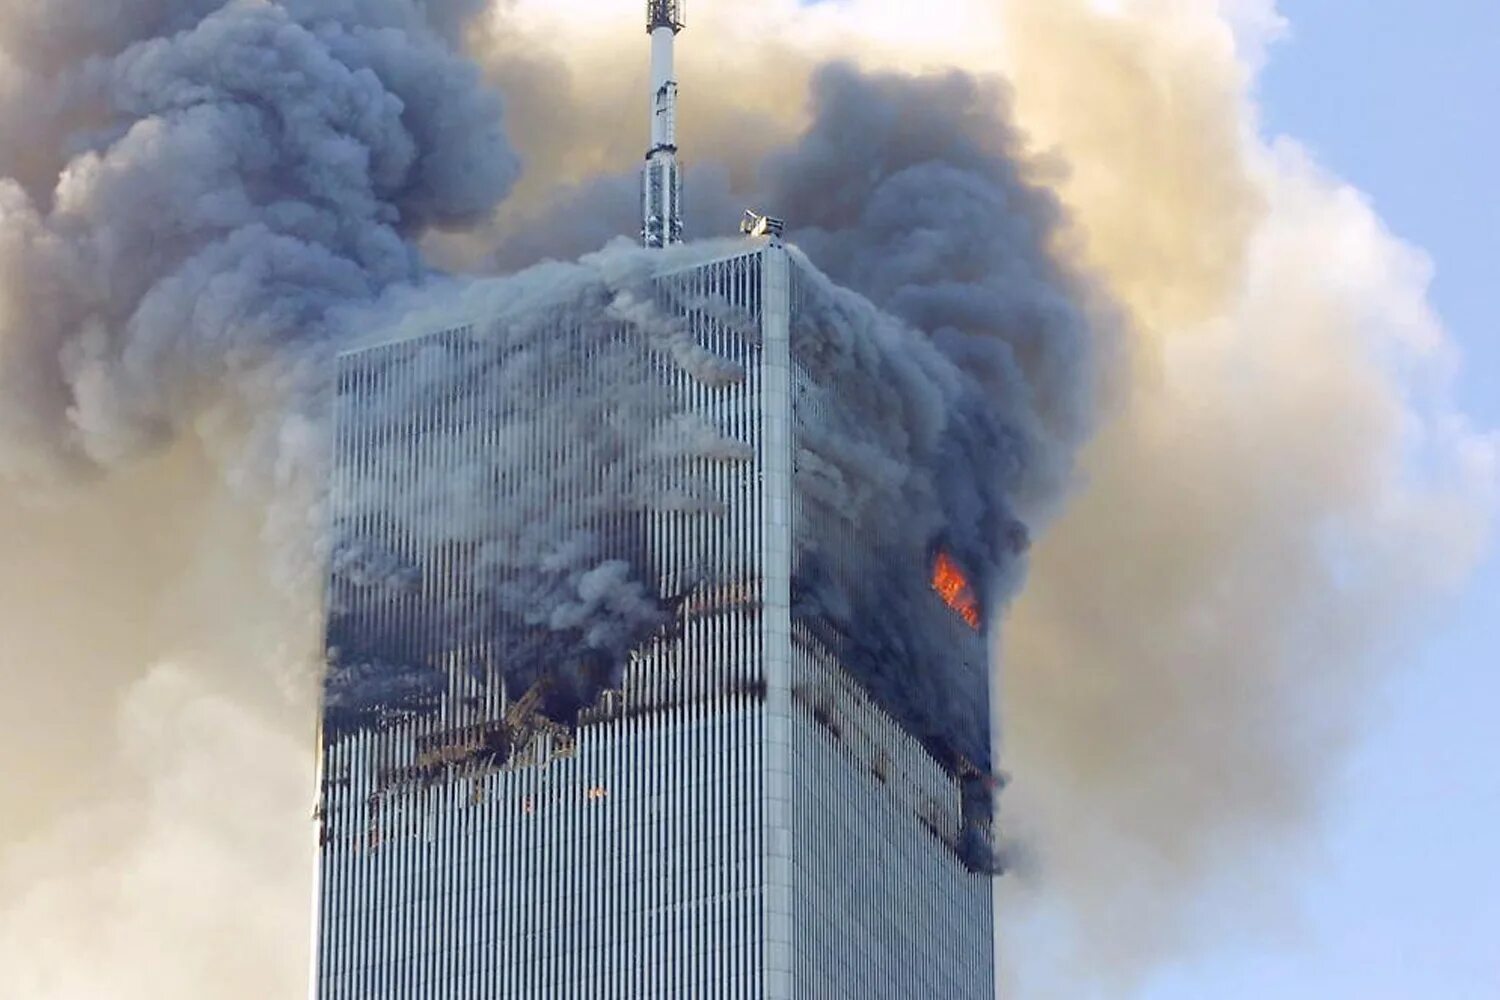 Теракт в 2001 году 11 сентября. Башни Близнецы в Нью-Йорке 11 сентября. ВТЦ Нью-Йорк 2001. Башни ВТЦ 11 сентября 2001. Северная башня ВТЦ 11 сентября.